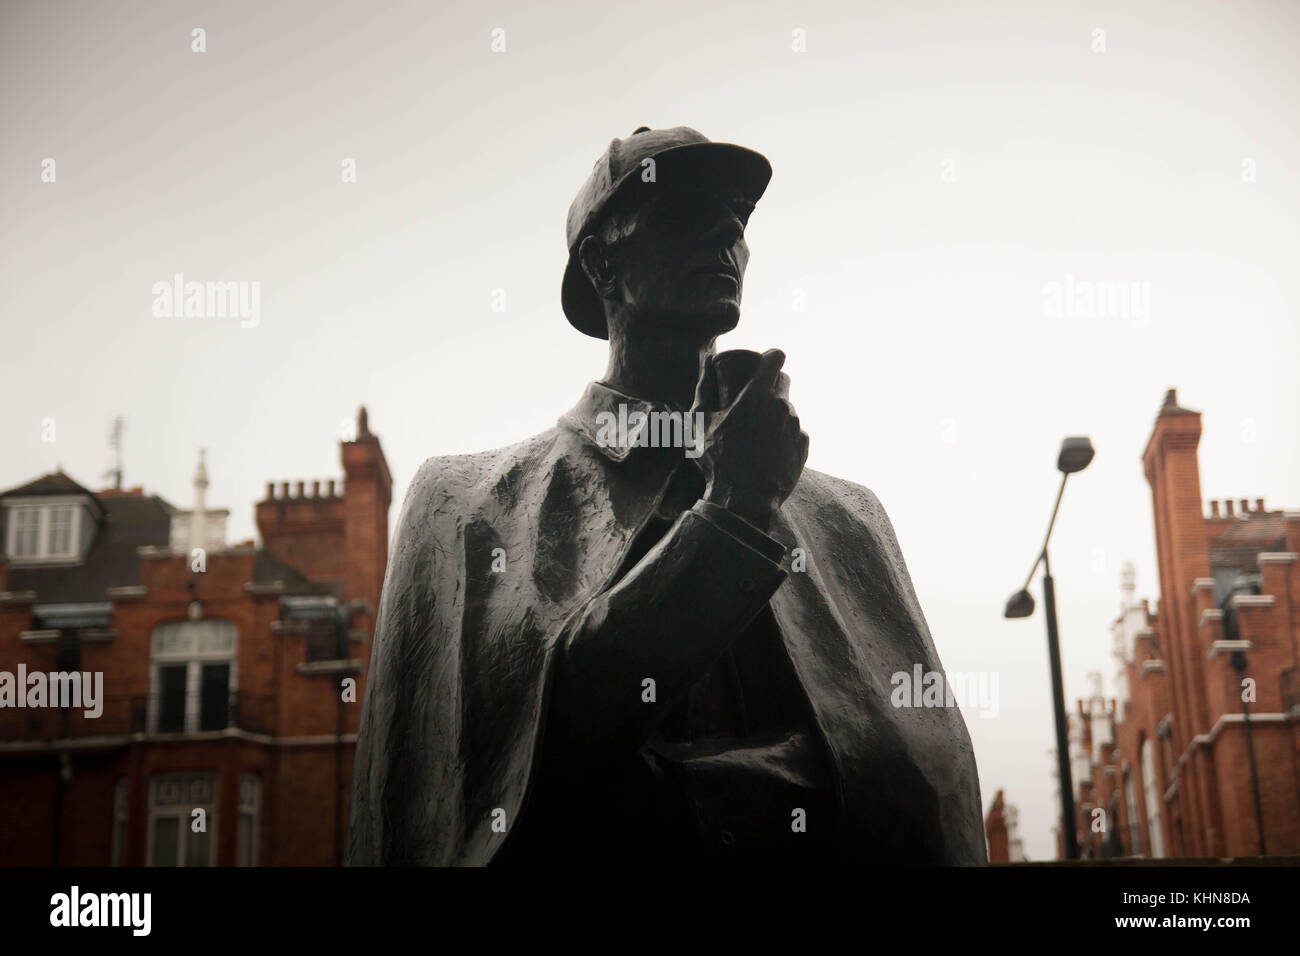 The Sherlock Holmes statue in Baker Street, London, UK. Stock Photo